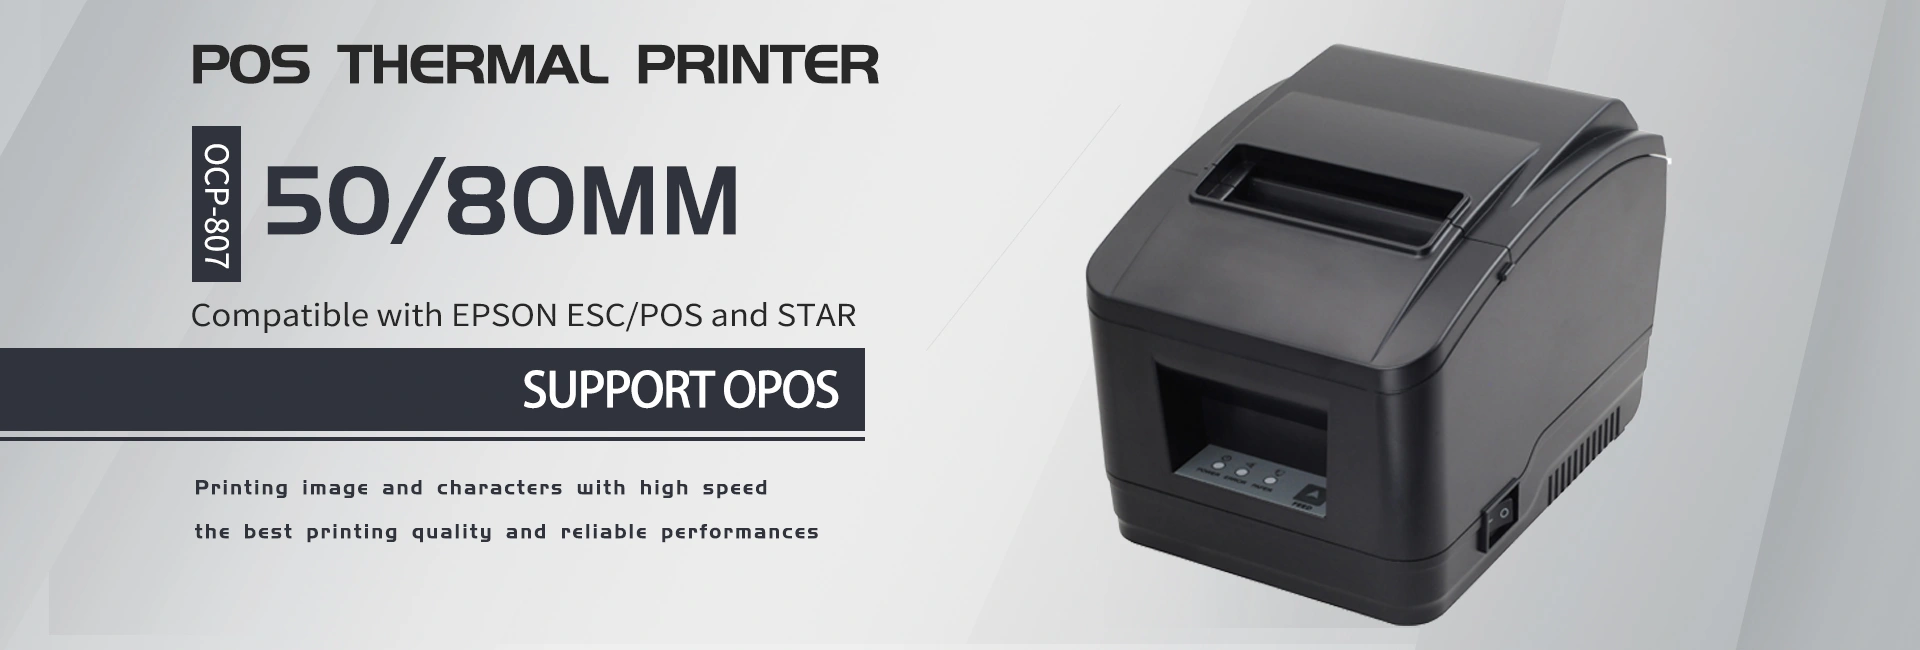 pos printer